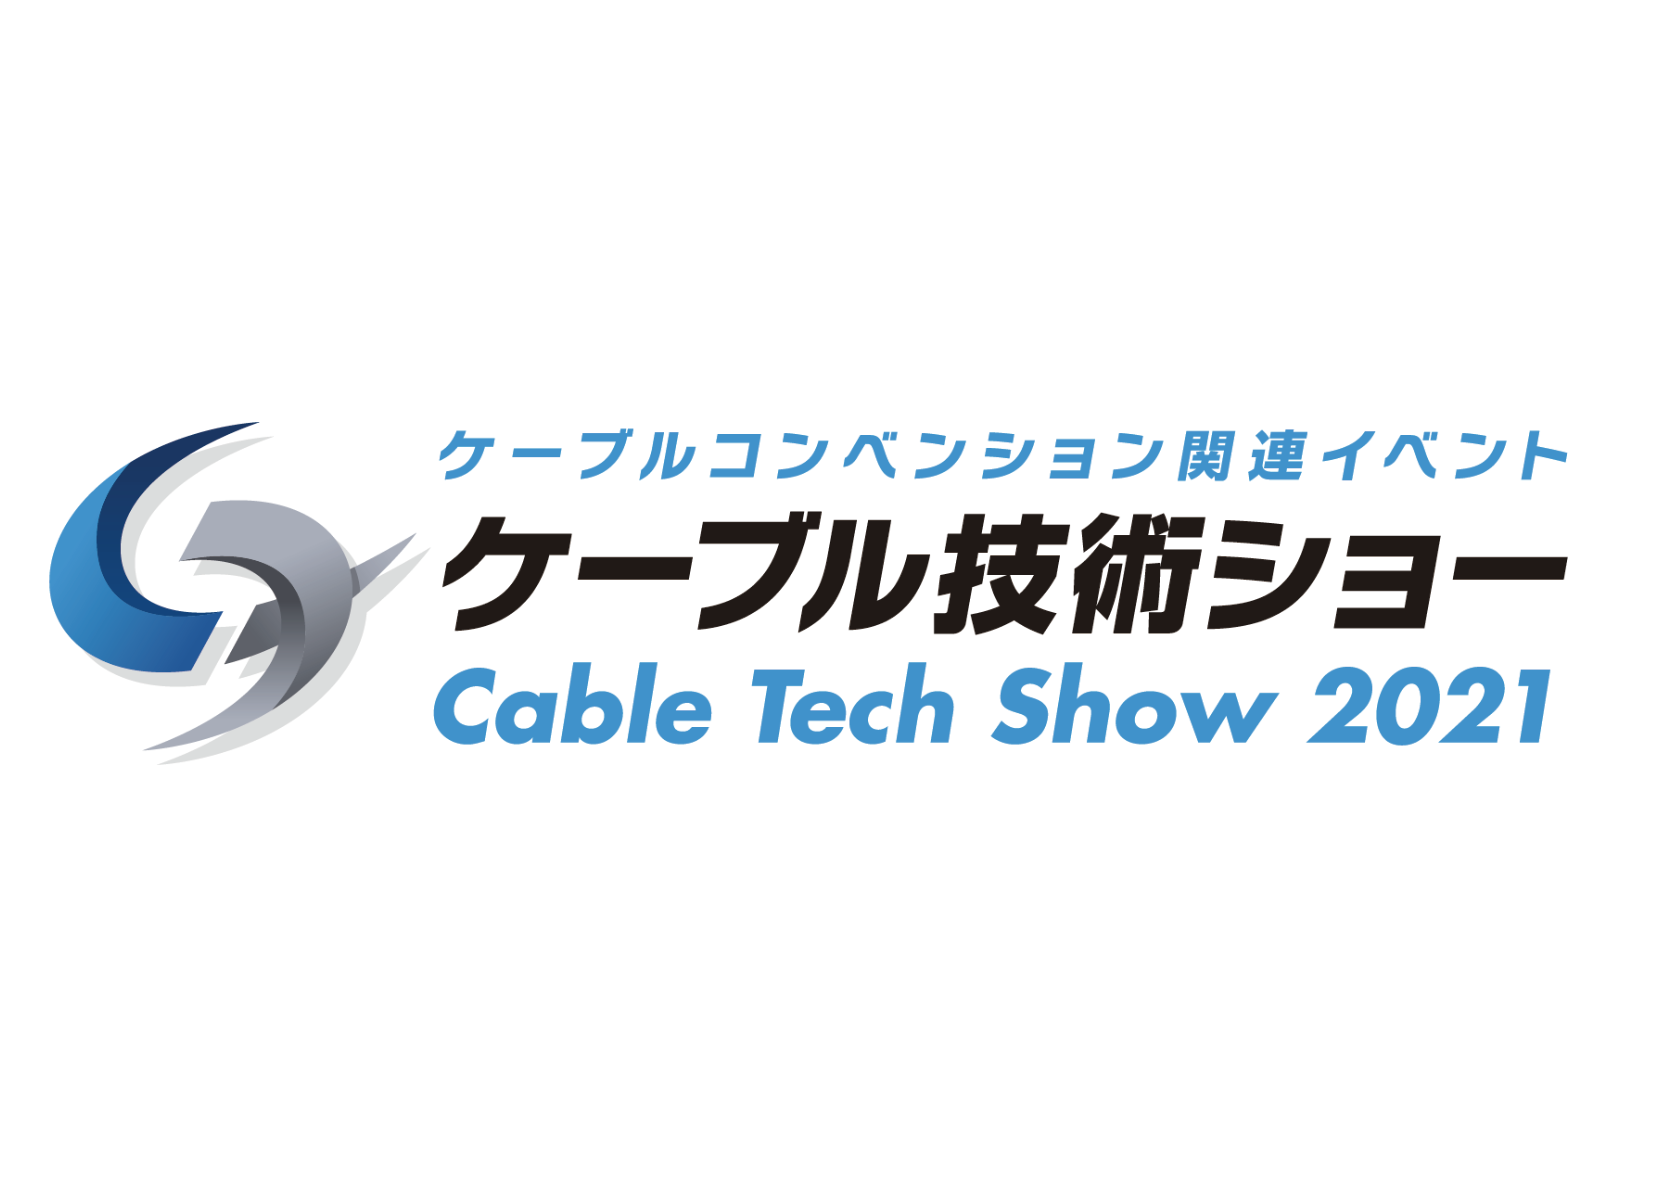 ケーブル技術ショー2021 オンライン展示会も開催 6月3、4日 東京国際フォーラムでの画像